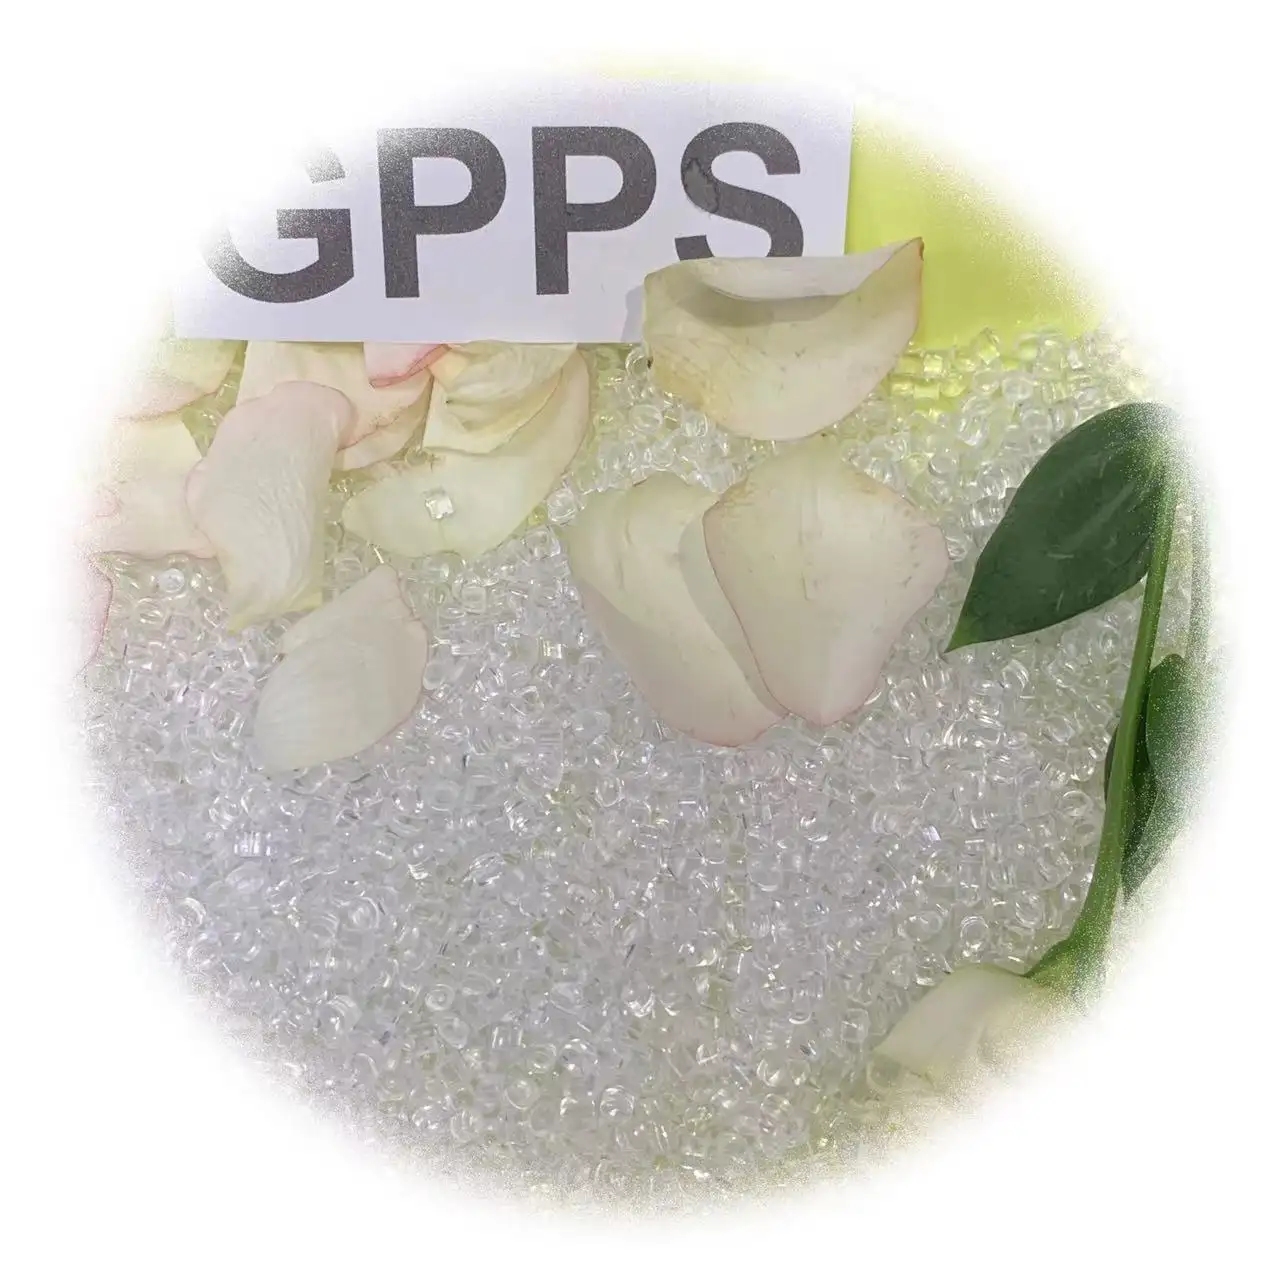 เกรดโปร่งใส เกรดโปร่งใสสูง โพลีสไตรีน GPPS เม็ดพลาสติก วัตถุดิบพลาสติก / GPPS GP150